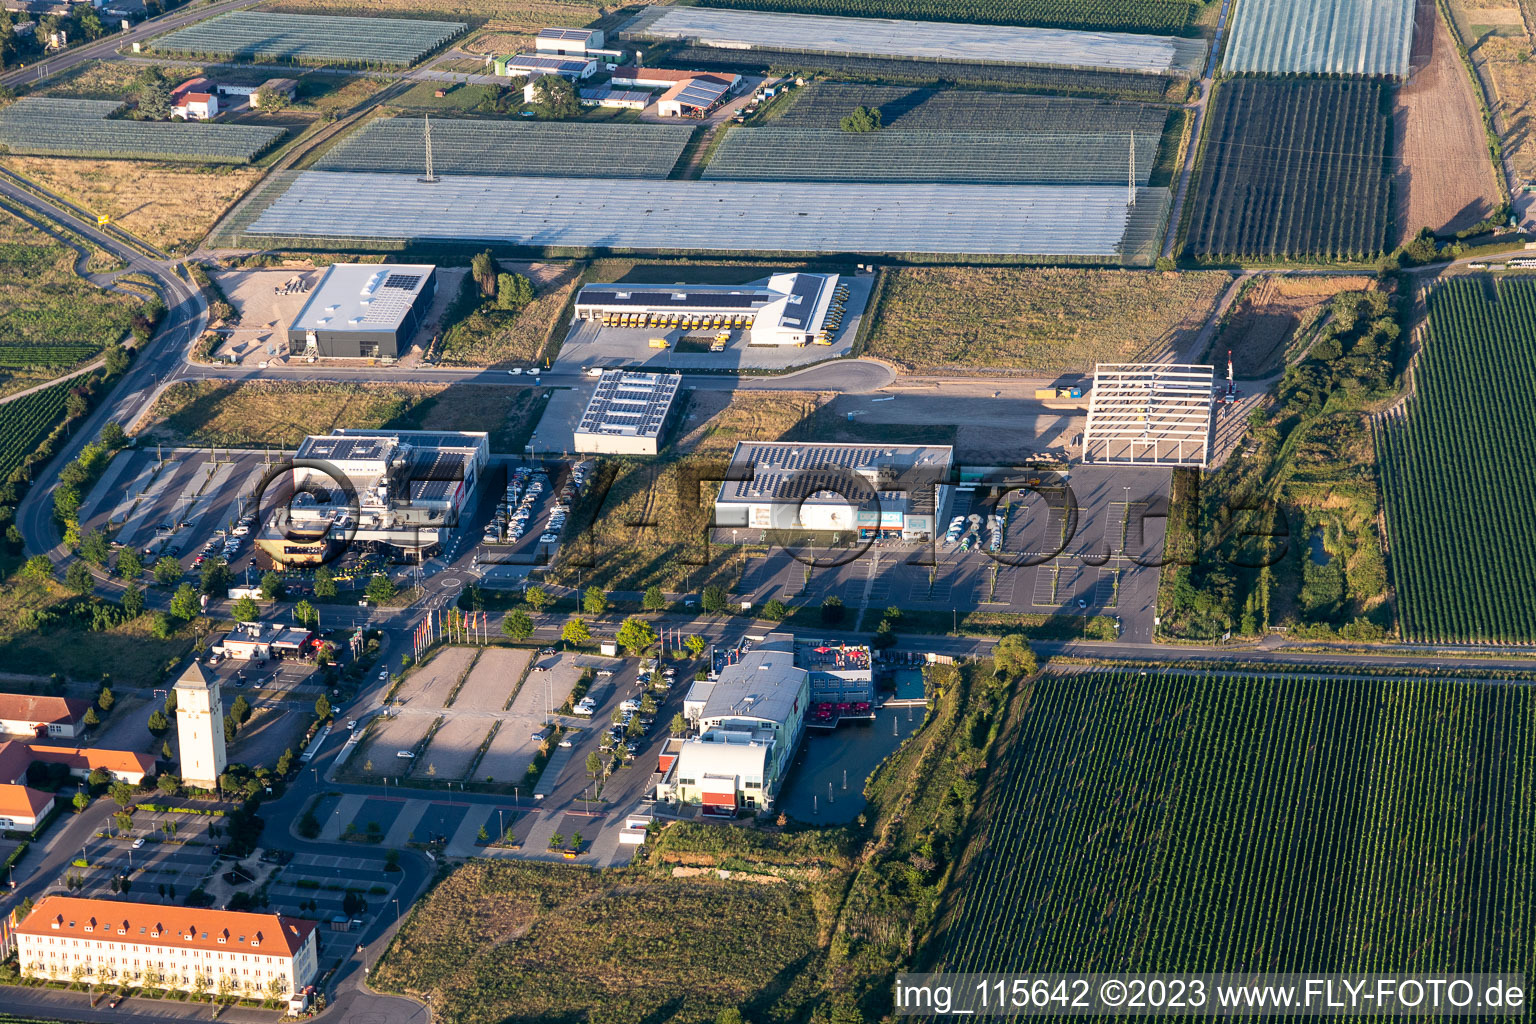 Luftbild von Cineplex Decathlon in Neustadt an der Weinstraße im Bundesland Rheinland-Pfalz, Deutschland